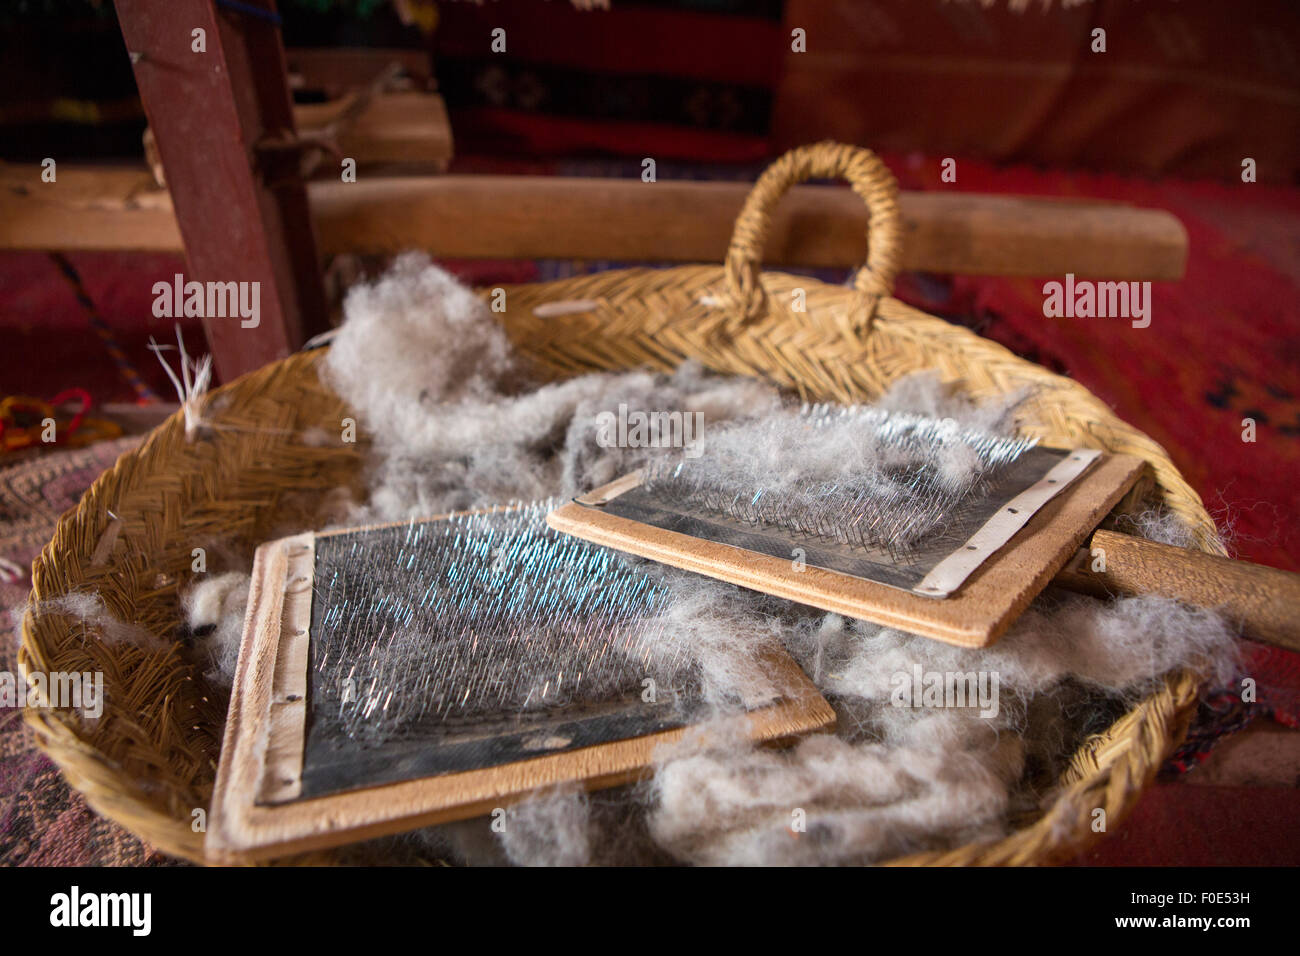 Detail der Schafe Wolle Pinsel in einem Weidenkorb Kämmen gefunden in einem traditionellen Geschäft in Ait Benhaddou, Marokko Stockfoto